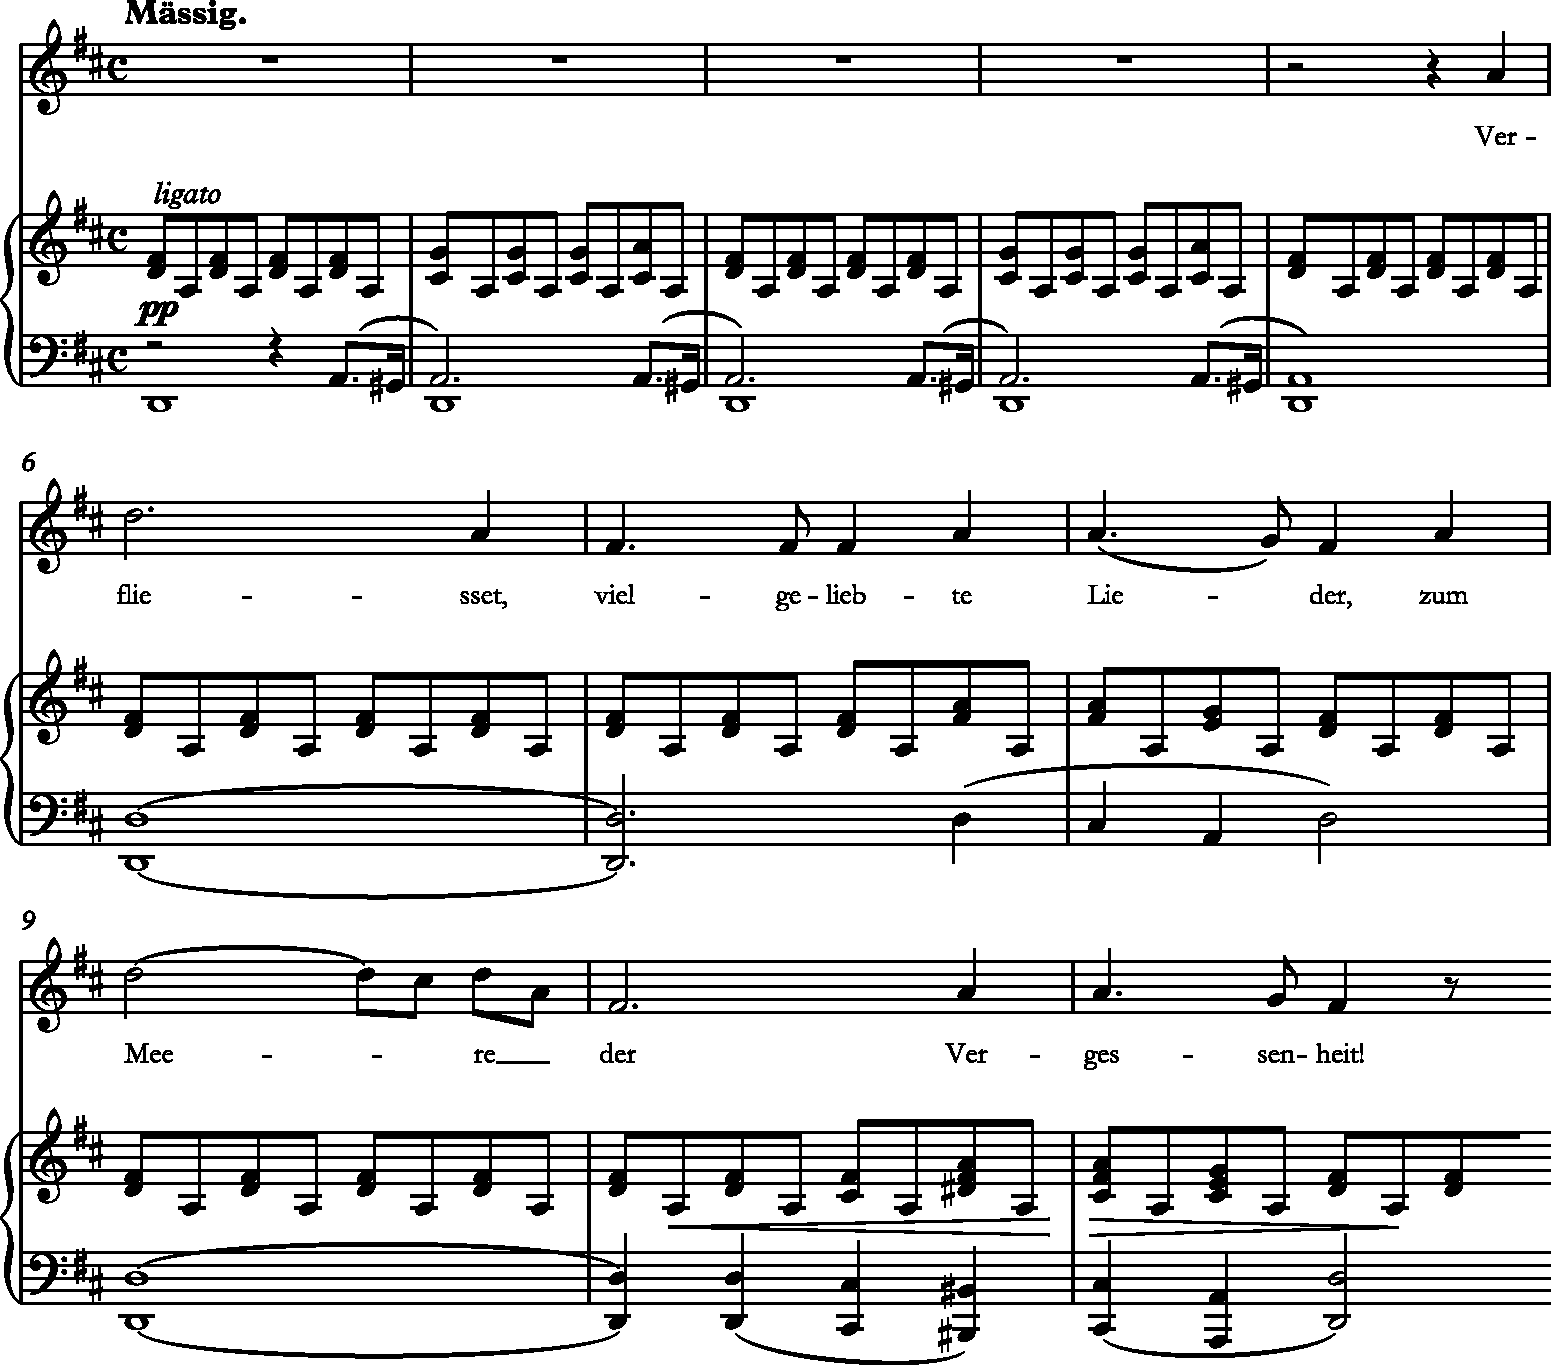 Free Nathan Rubinstein sheet music  Download PDF or print on